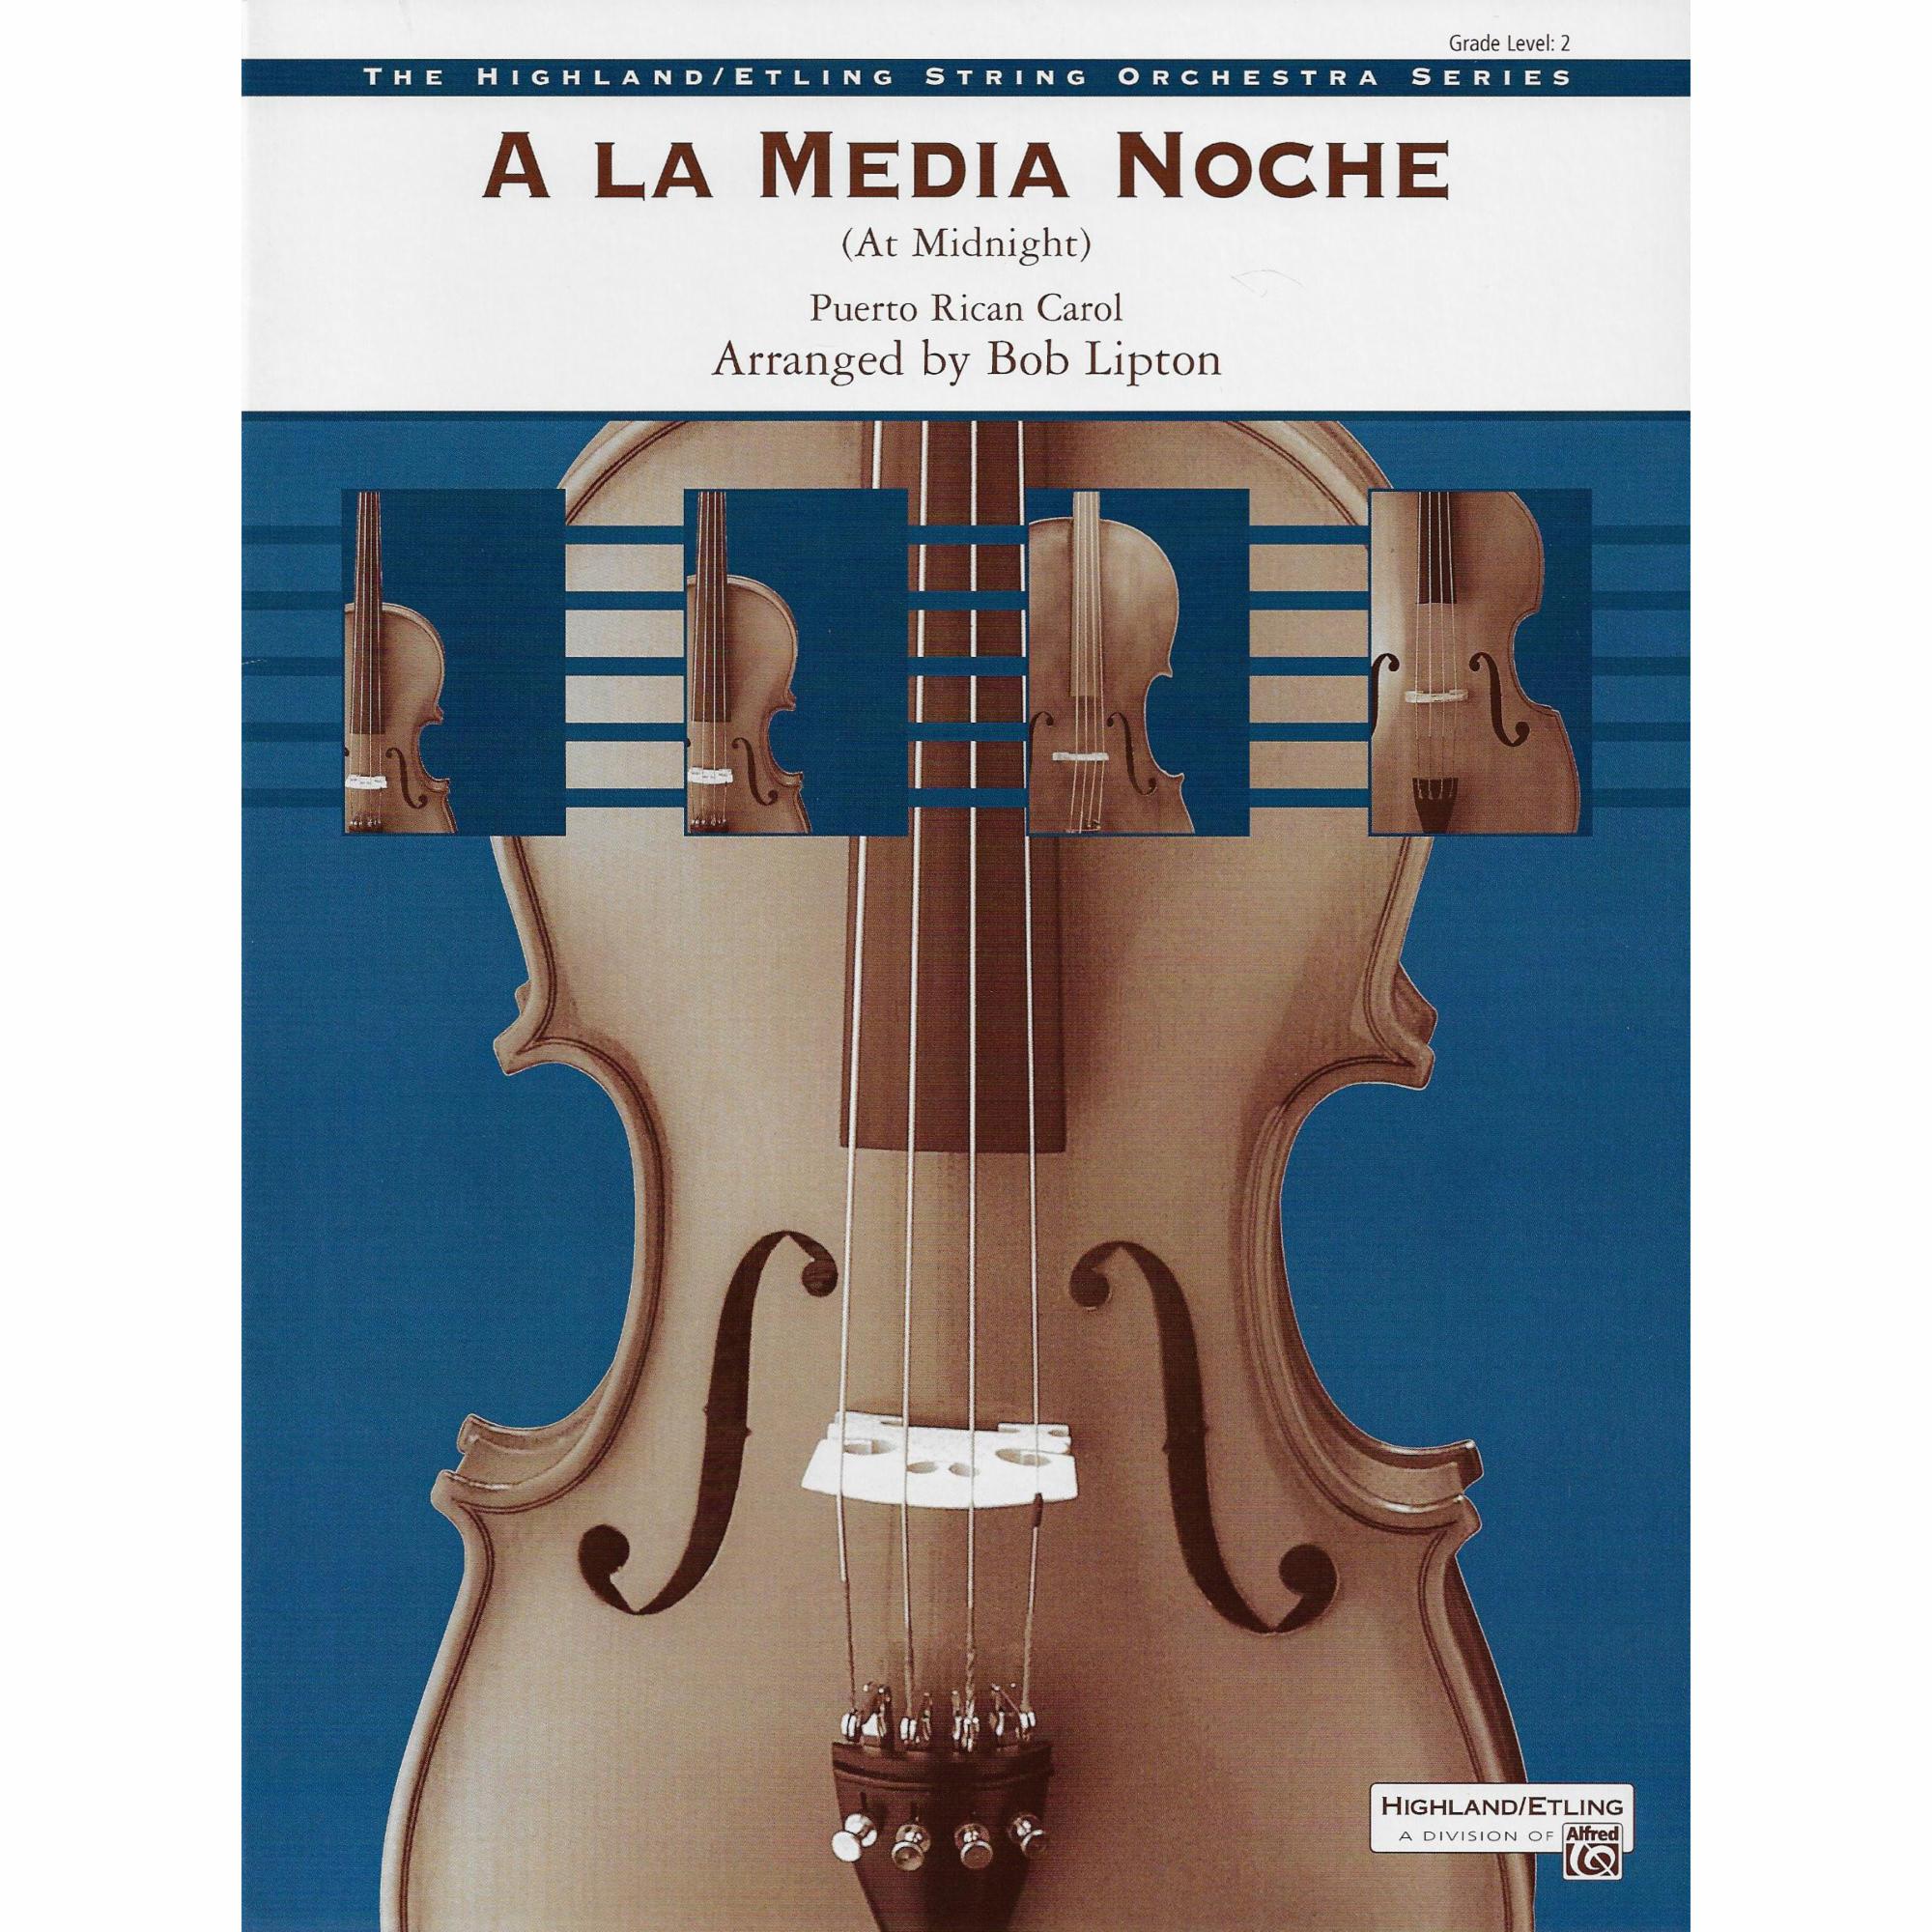 A La Media Noche for String Orchestra